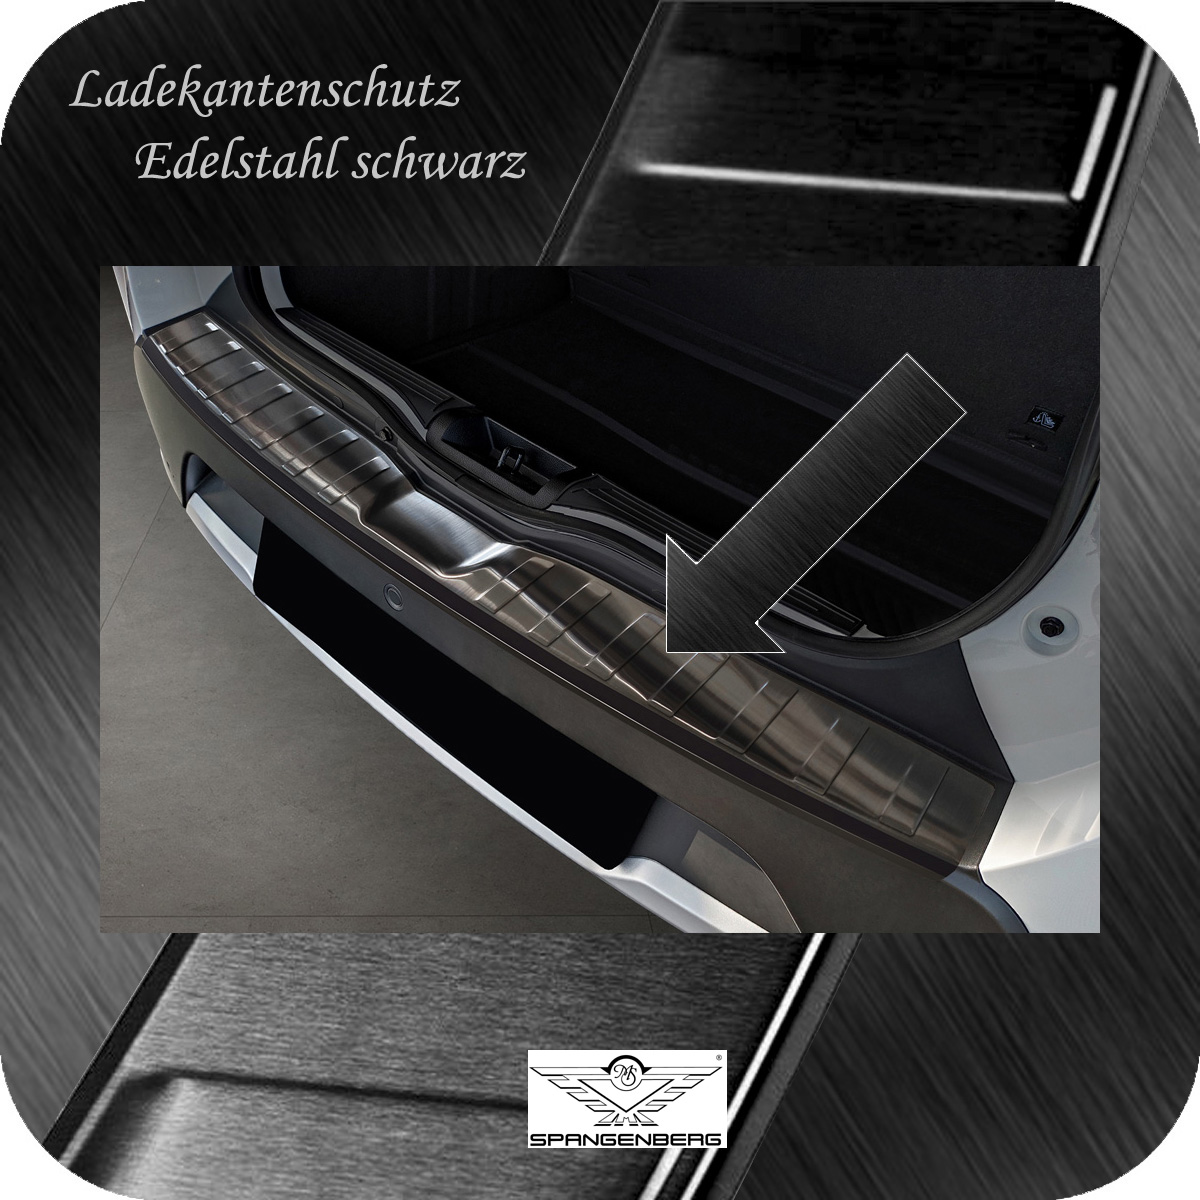 Ladekantenschutz Edelstahl schwarz für Dacia Spring Electic 5-Tür 2021- 3245259